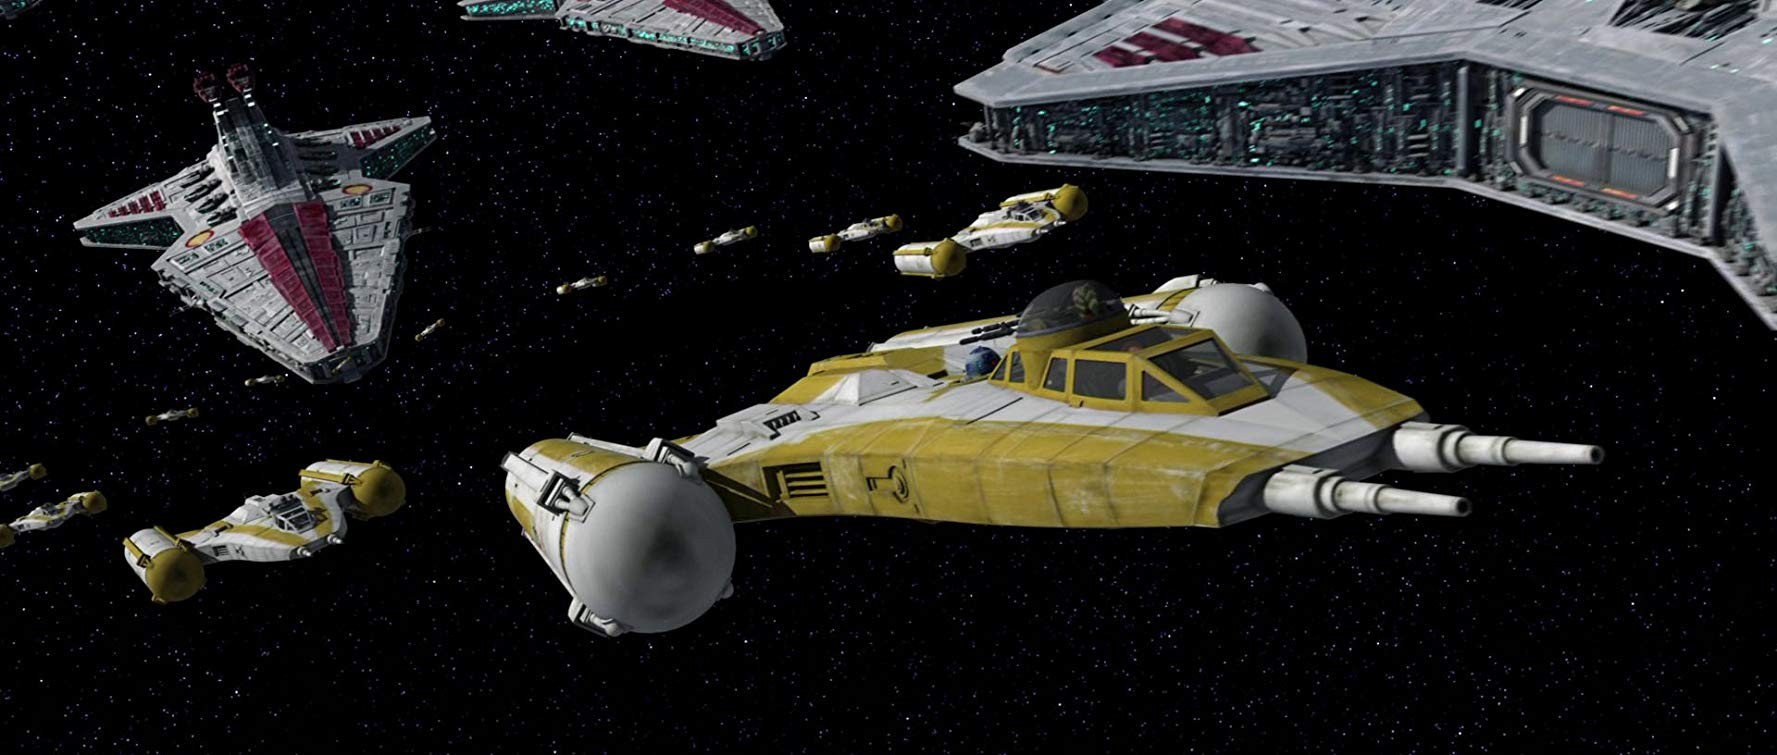 Звездные войны: Войны клонов: кадр N160378